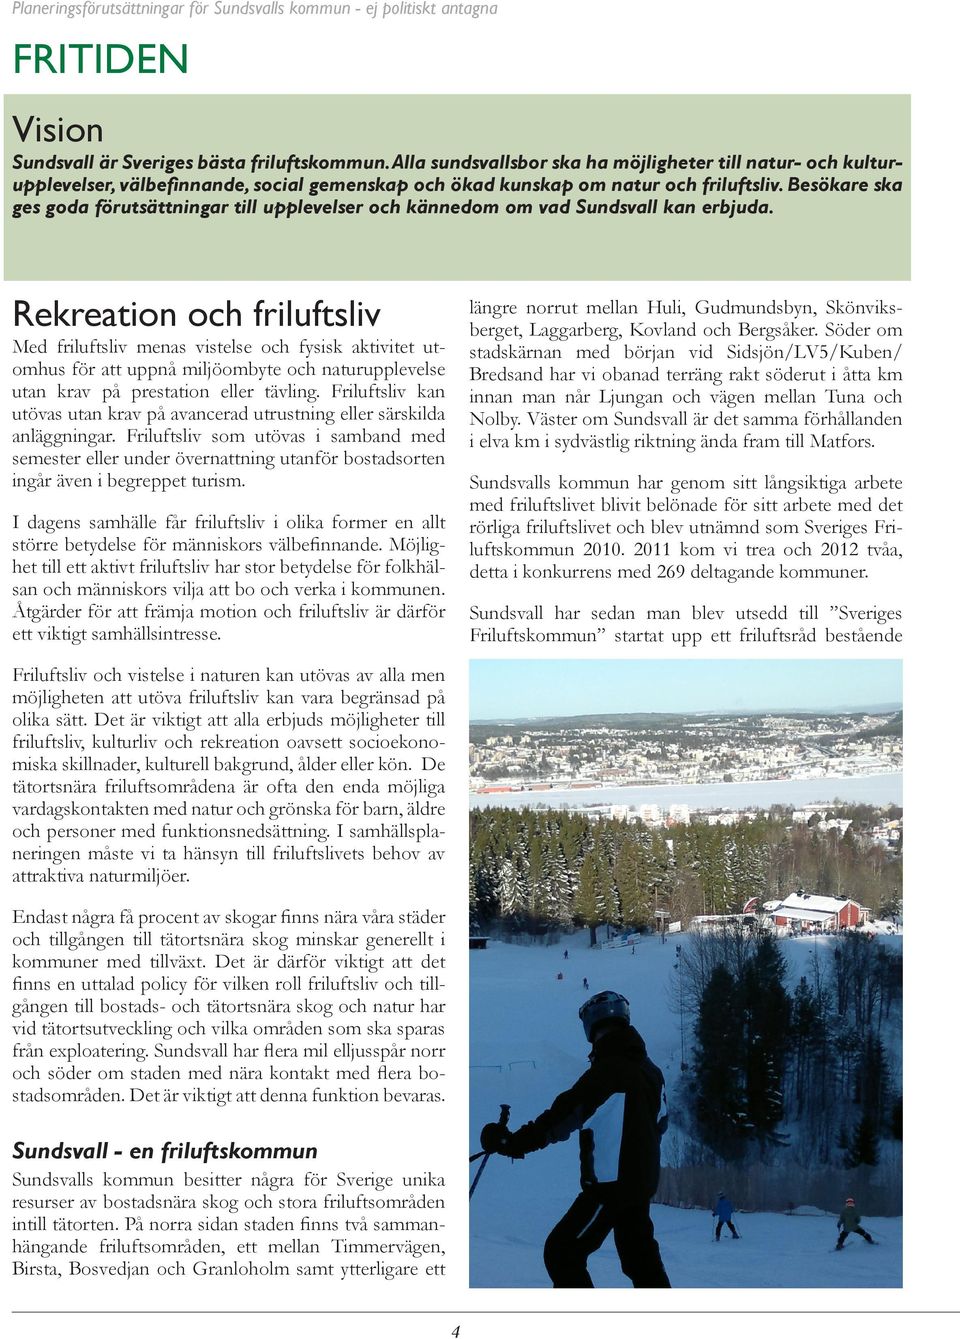 Besökare ska ges goda förutsättningar till upplevelser och kännedom om vad Sundsvall kan erbjuda.